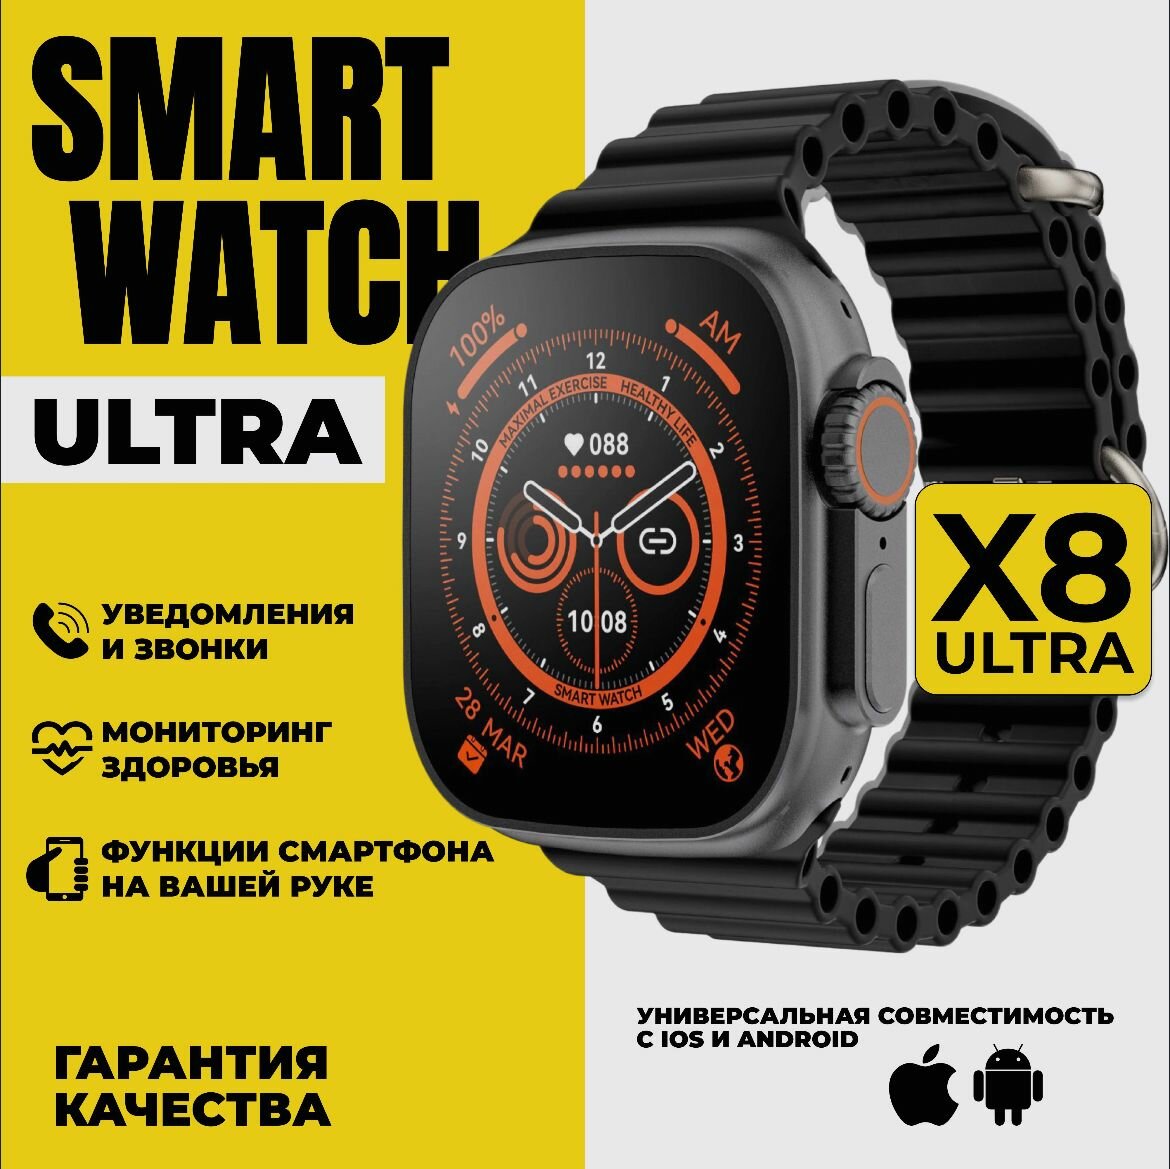 Умные часы Smart Watch X8 Ultra, черный / наручные электронные сенсорные мужские, женские смартчасы / спортивный фитнес браслет с блютуз для смартфона, телефона / шагомер / пульсометр / мониторинг сна